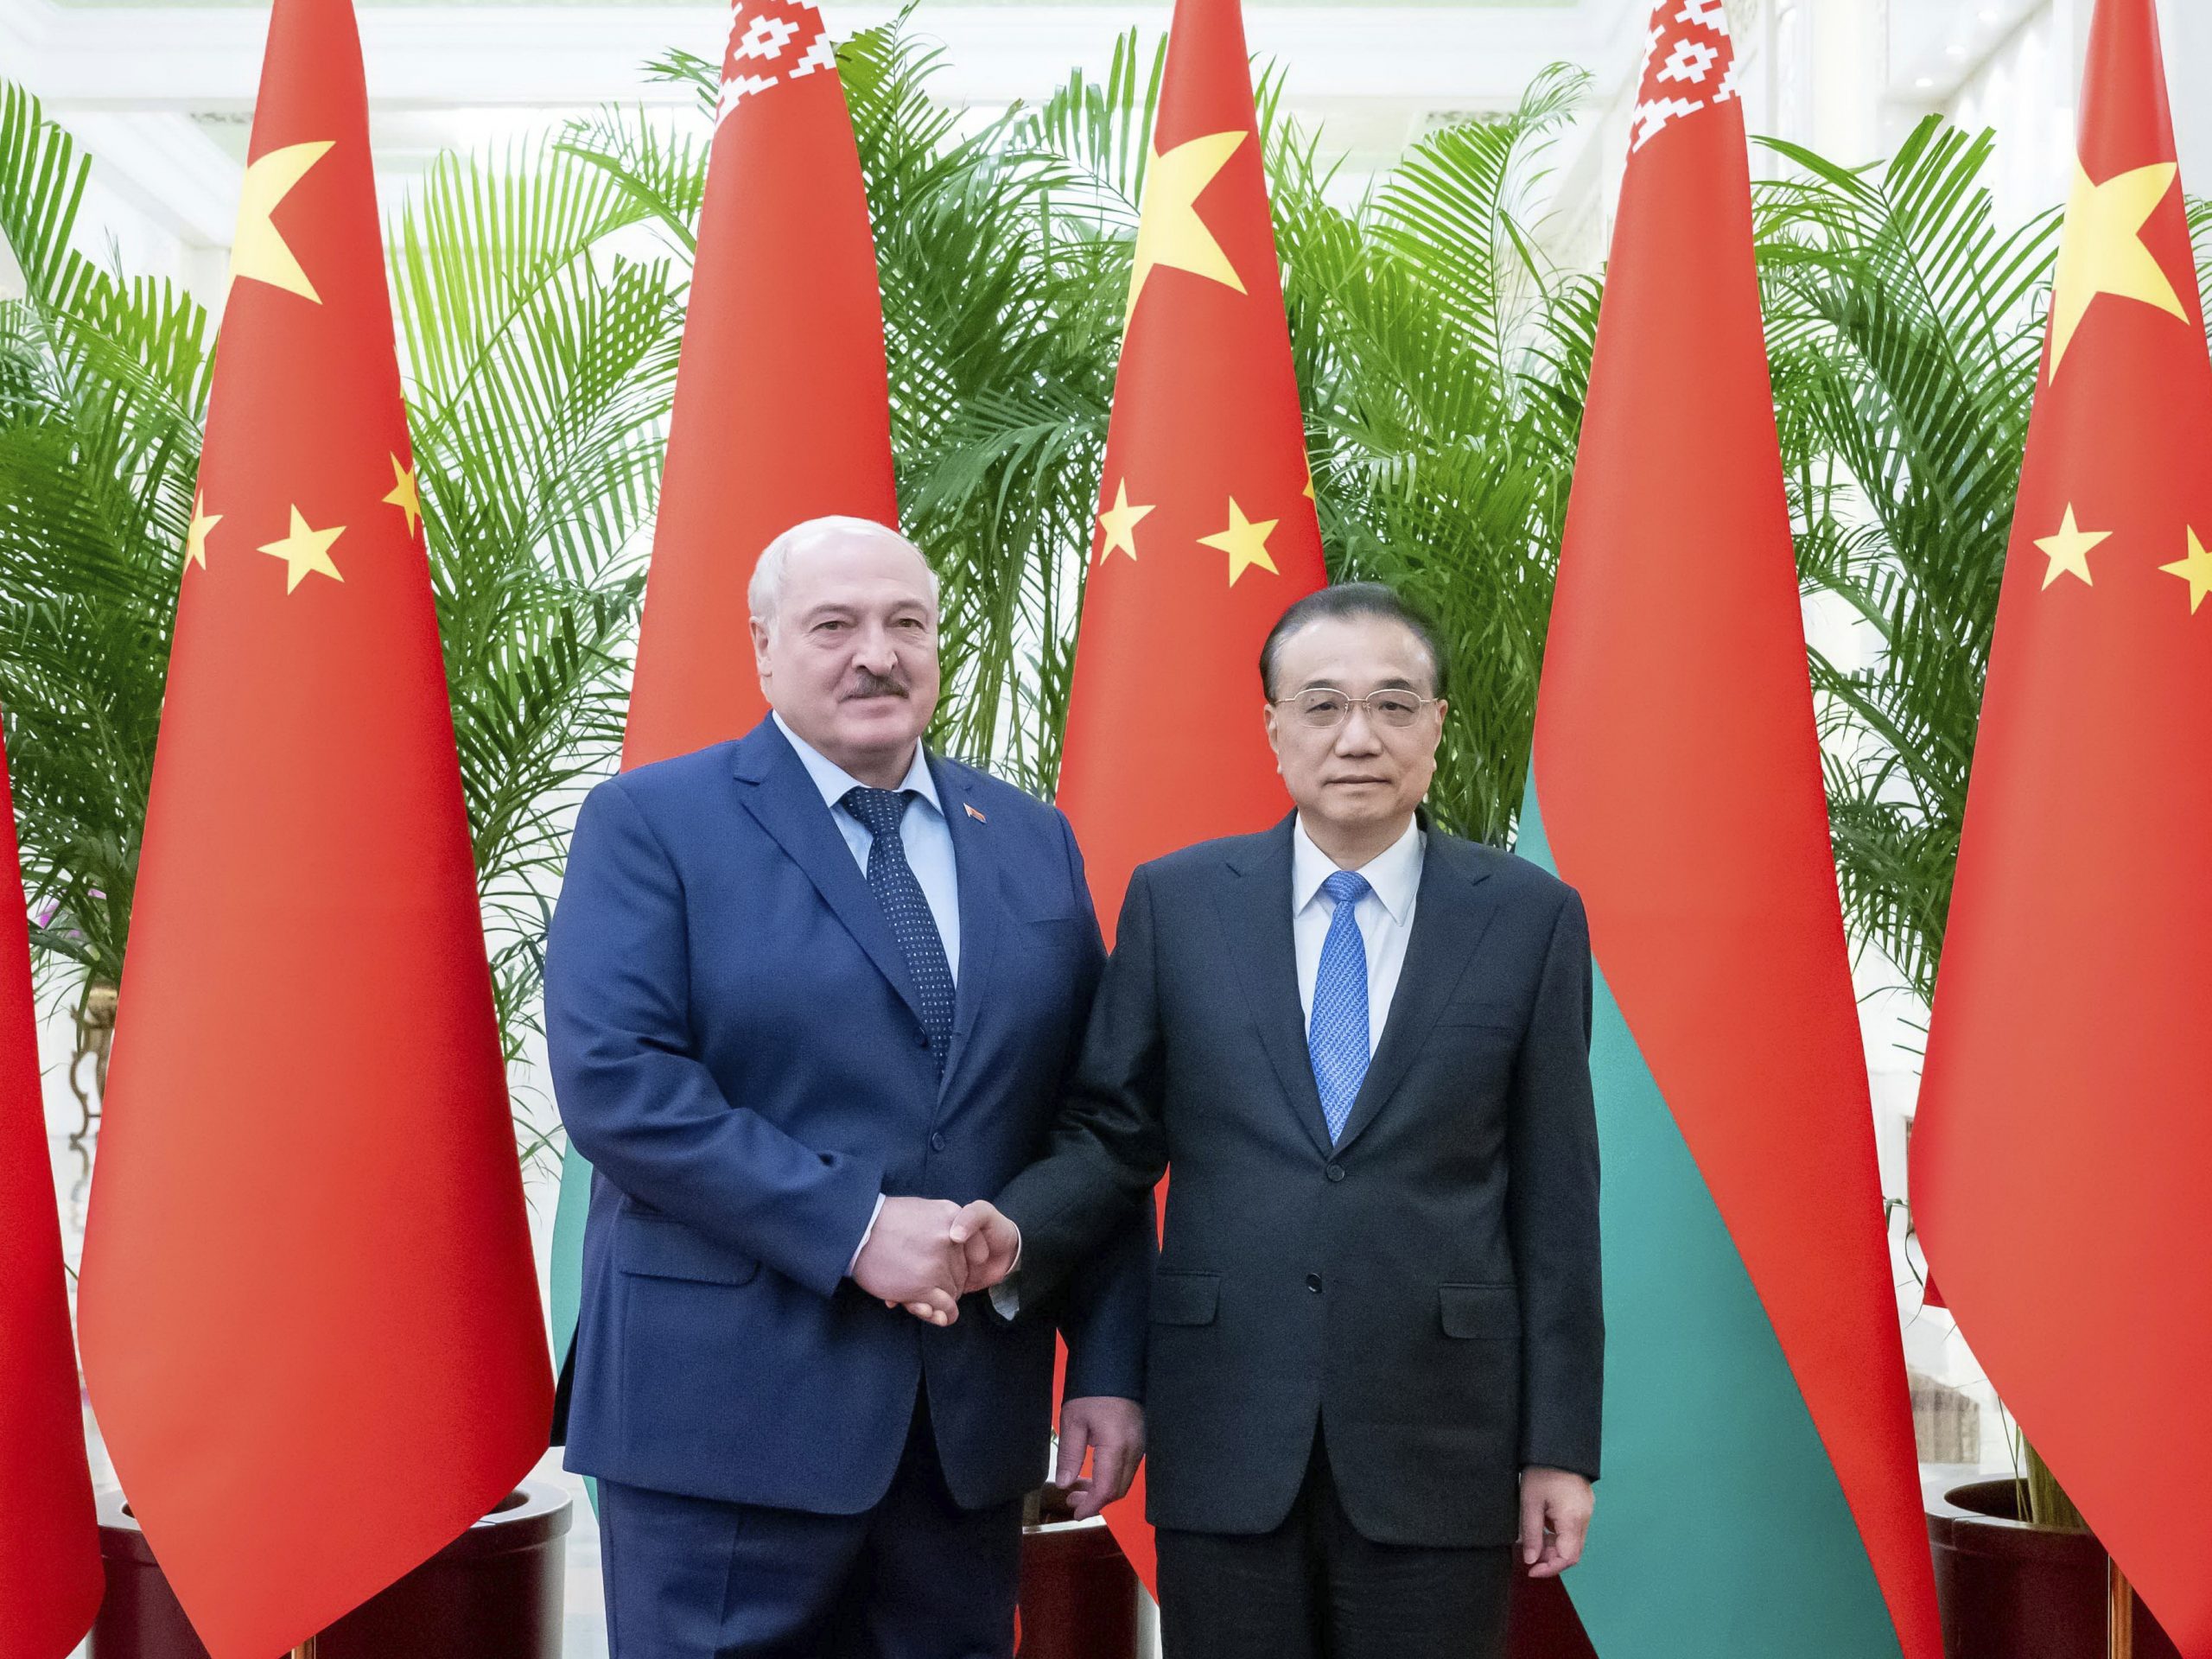 白俄总统唔习近平 “完全支持中国的乌克兰和平计划”